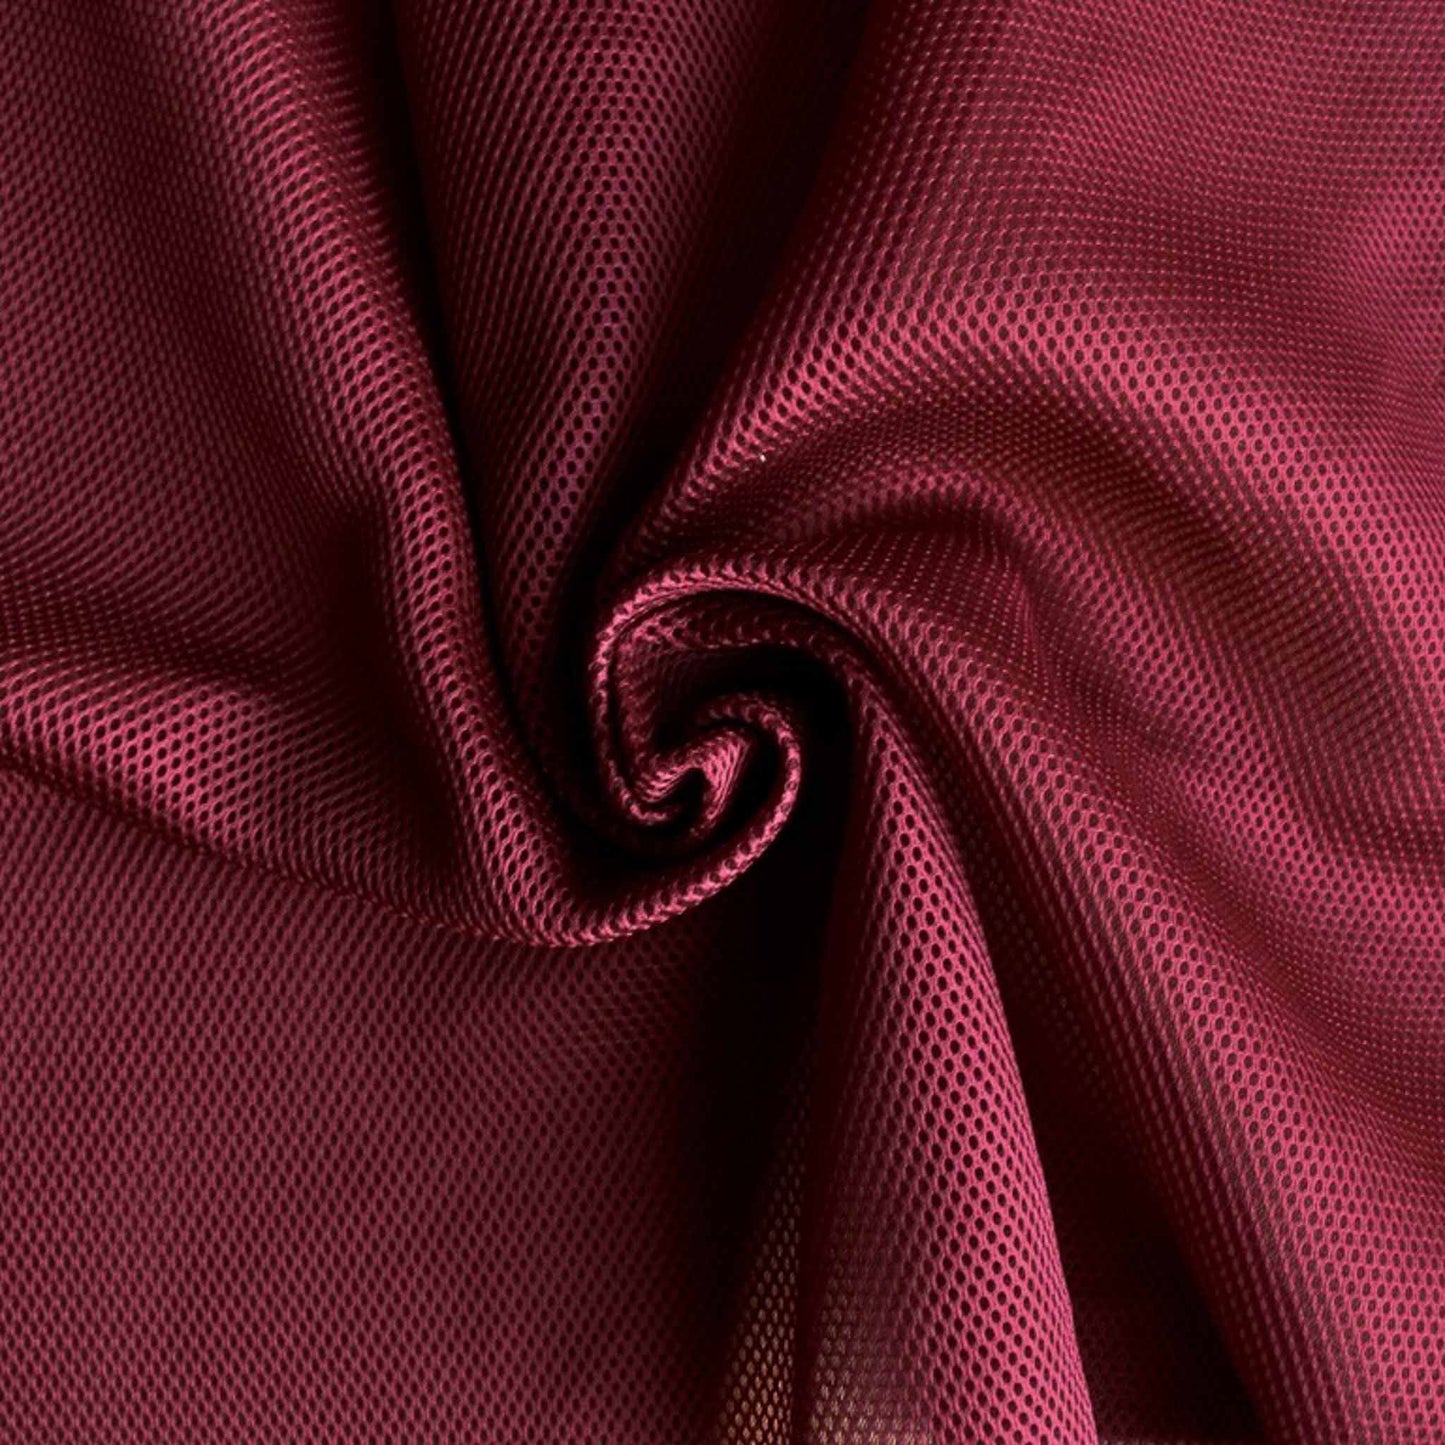 airtex mesh 3D spacer sports fabric in maroon colour